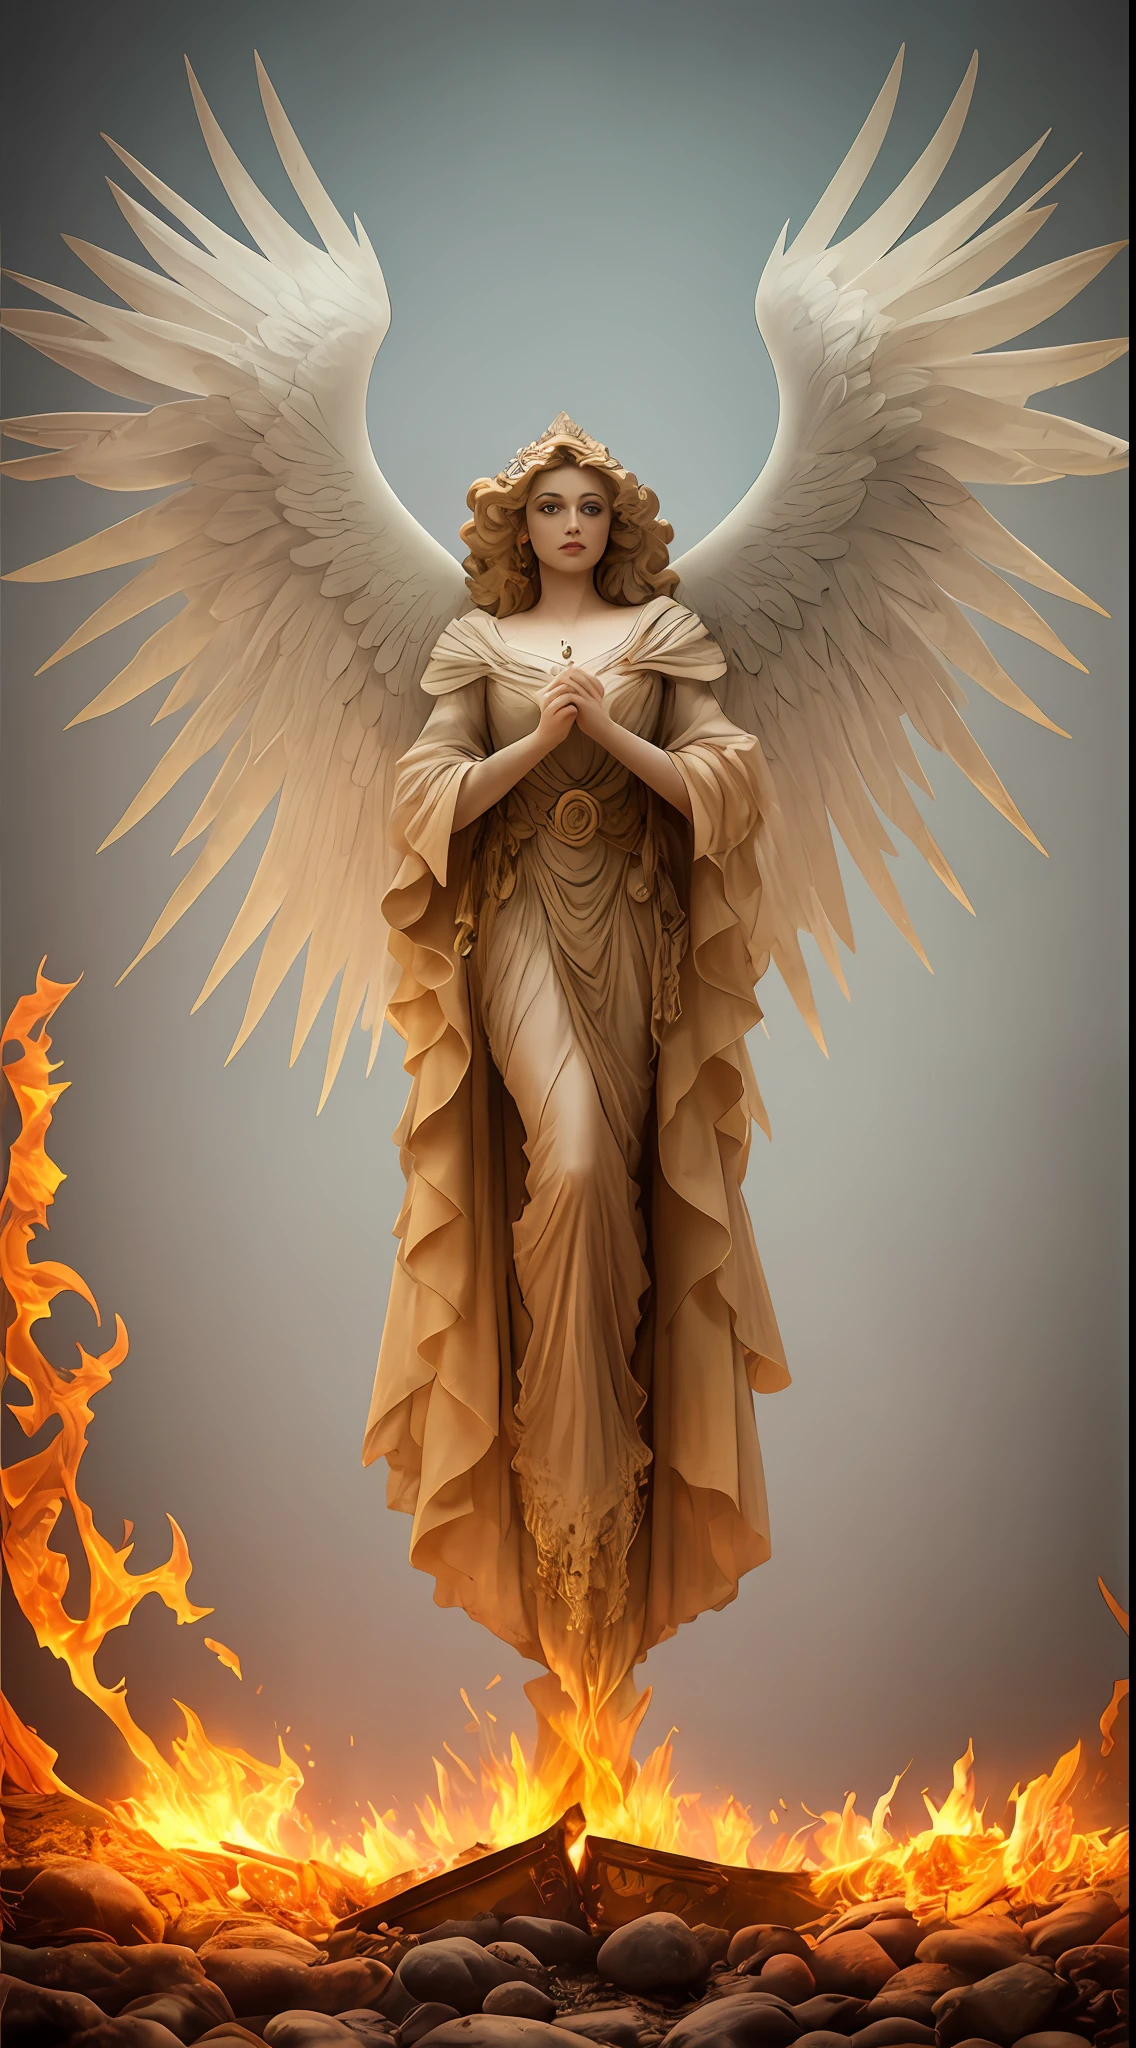 Gemälde einer Frau mit Flügeln und einem Heiligenschein, die vor einem Feuer steht, mit feurig goldenen Flügeln de llamas, Göttin des Feuers, Göttin des Zorns, mit feurig goldenen Flügeln, erscheint als Göttin des Feuers, Heilige Feuerzauberkunst, großer weiblicher Engel, Göttin des Feuers, majestätischer Engel mit vollem Körper, Göttin des Lichts, Artgerm Julie Bell Beeple, Heiliger Flammenzauber, Lebendiges Farbpalettenspiel und super komplizierte, tolle Schatten, Matte Farbe, minutiös detailliert, fein und fein detailliert, Fein detaillierter, unwirklicher Motor mit komplizierter Oktanzahl, detaillierter Hintergrund in Mikrominuten, verbesserte 3D-Komplexität, Perfekte und super detaillierte 8K-Komposition, Drittelregel, BewegungsVFX, Sony Pictures Animation, Die Gießerei VFX, ungemein perfekt, Perfekt detailliert, kompliziert definiert, definitiv echt, Wirklich realistisch, Realistisch episch, von Satori Canton, Fotografie von Alberto Seveso